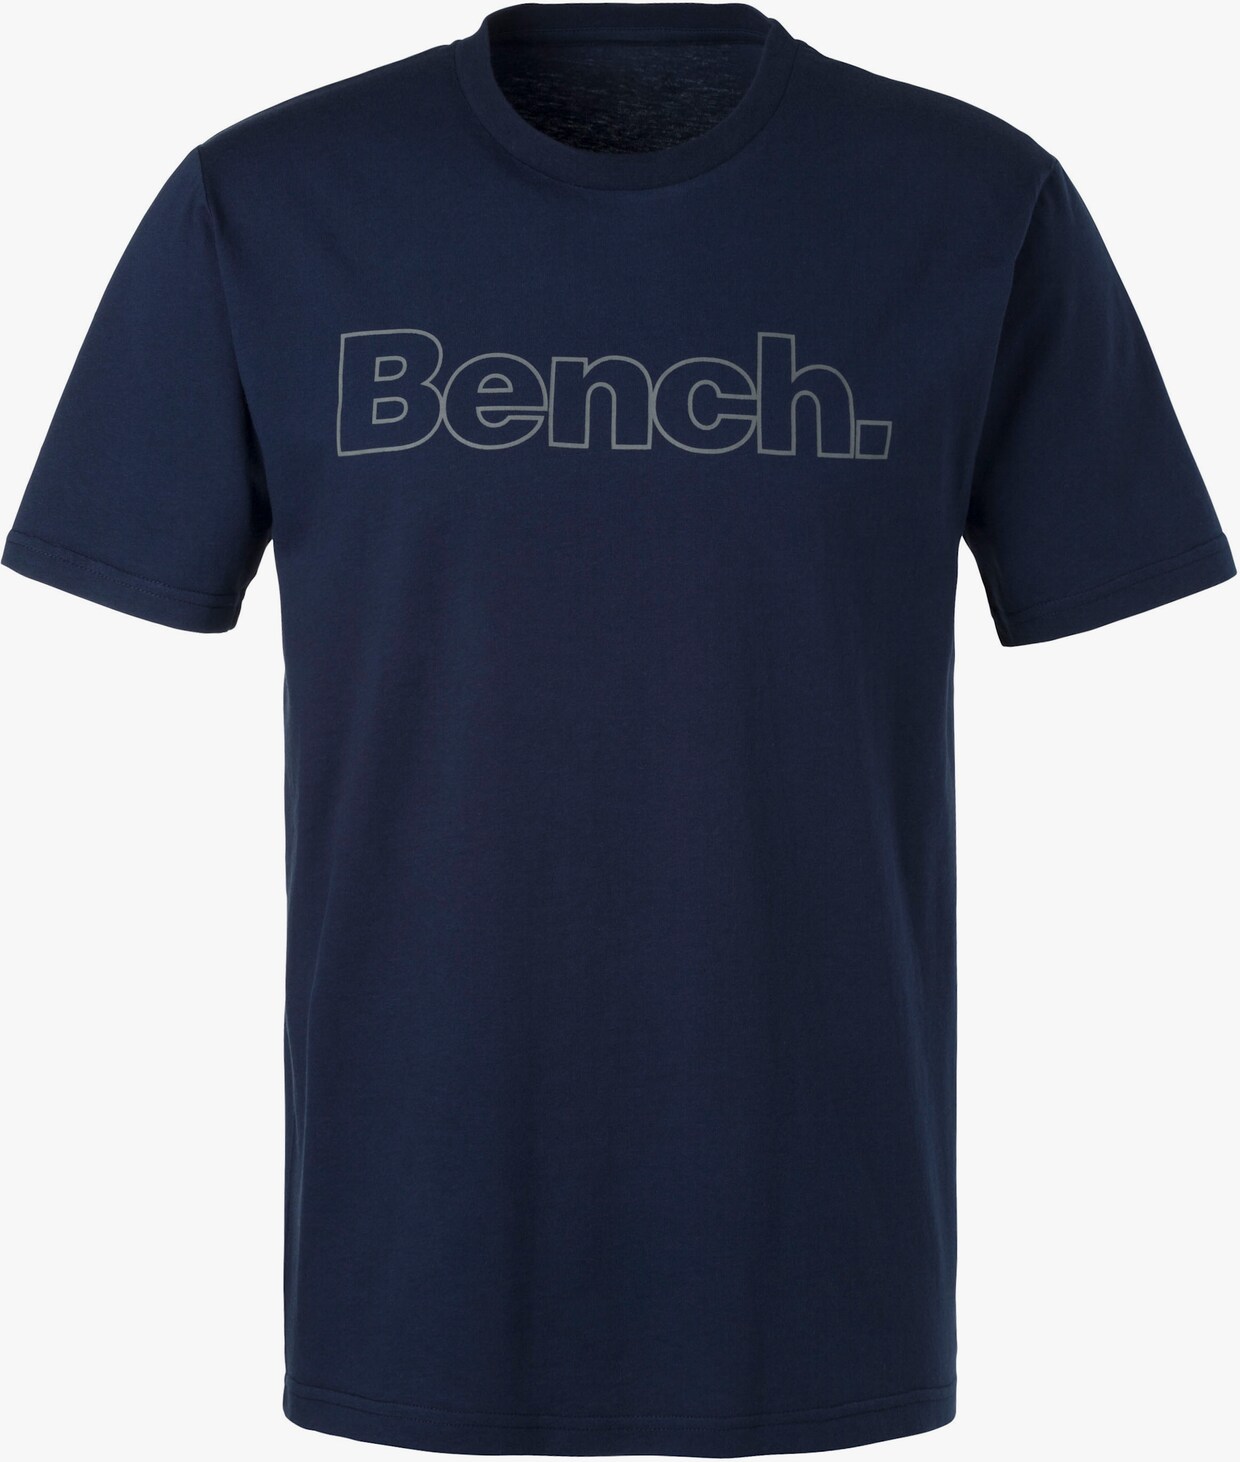 Bench. T-Shirt - grau-meliert, navy